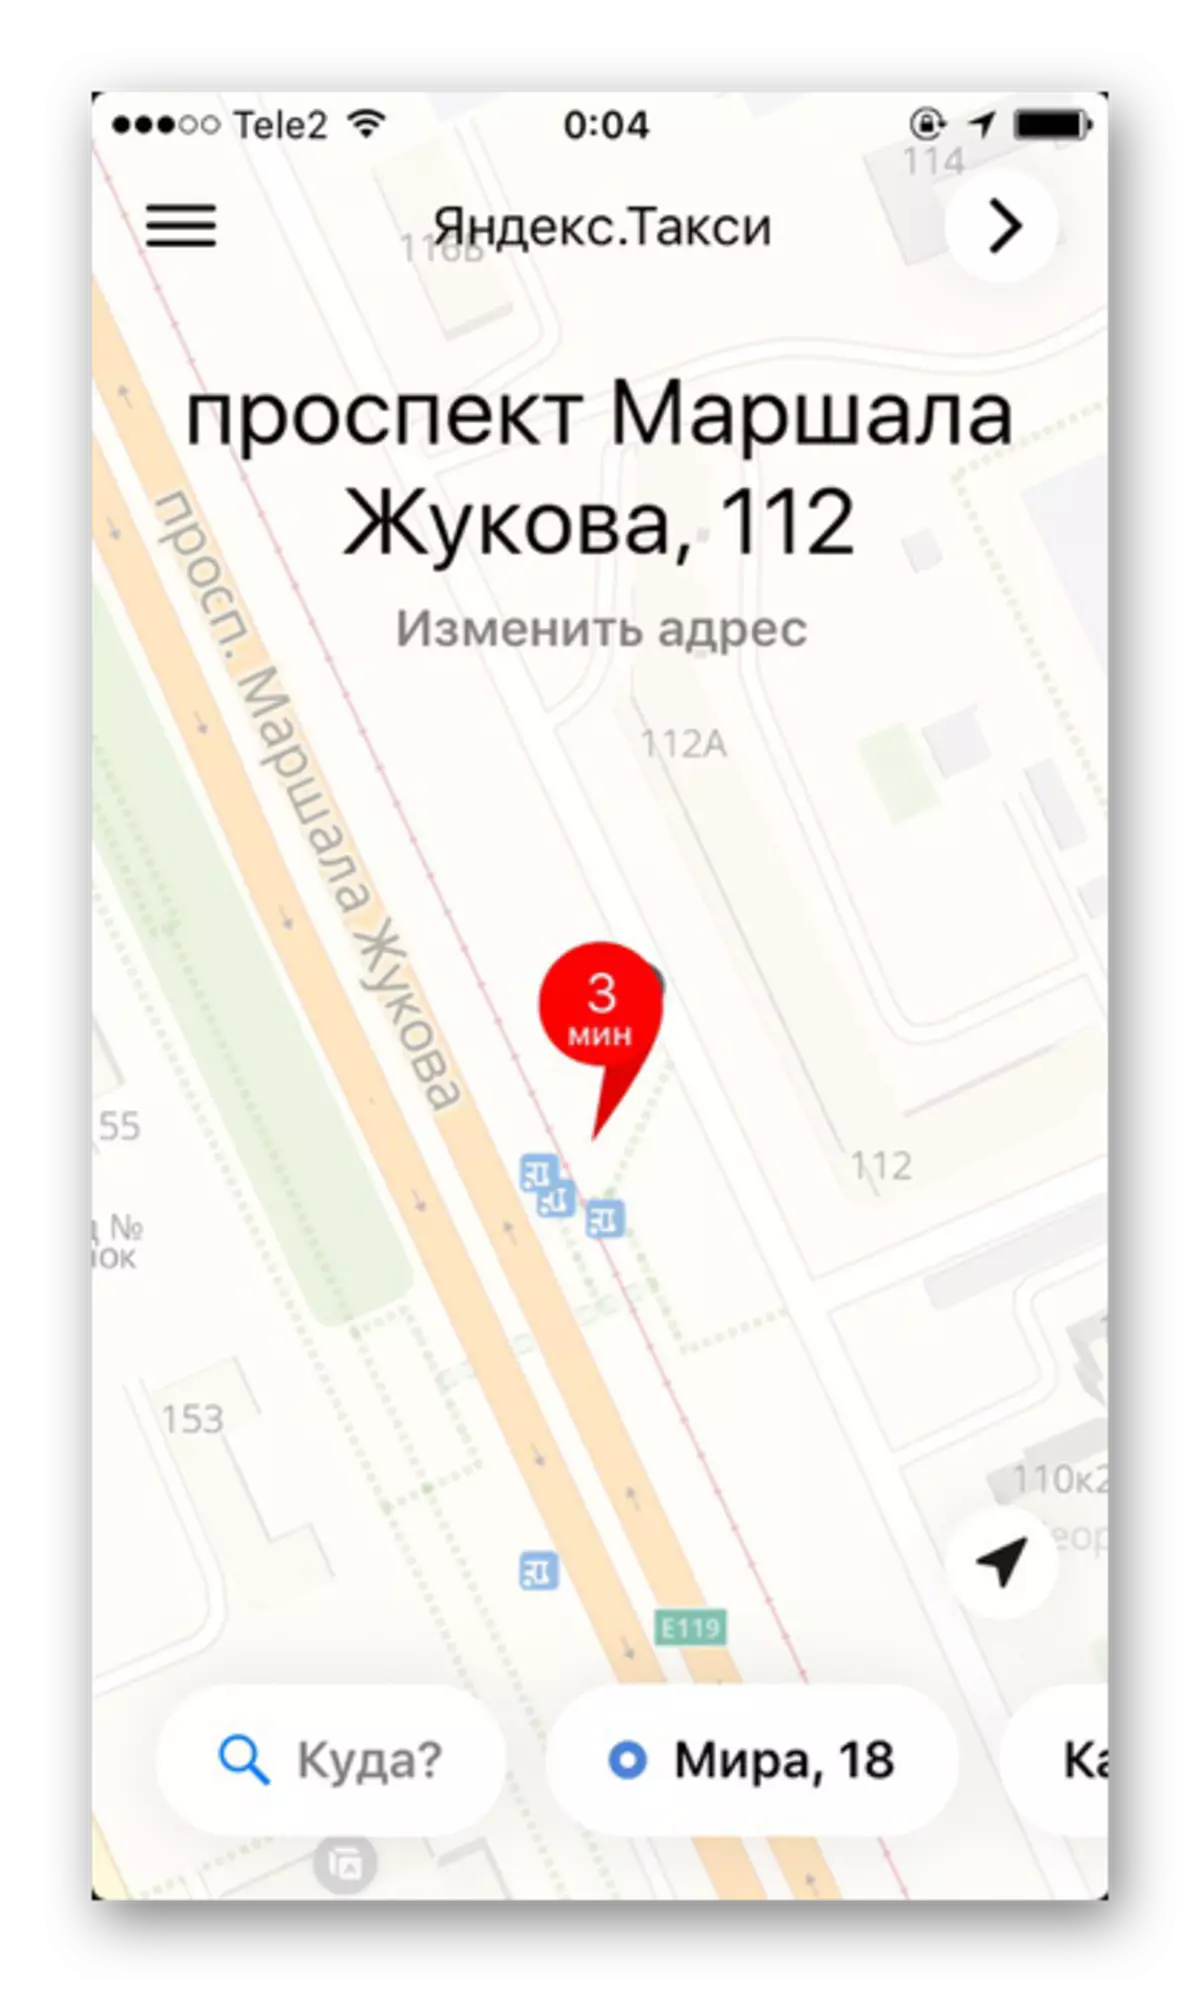 Mapa da área com uma designação detalhada de ruas e casas no aplicativo Yandex.Taxi no iphone